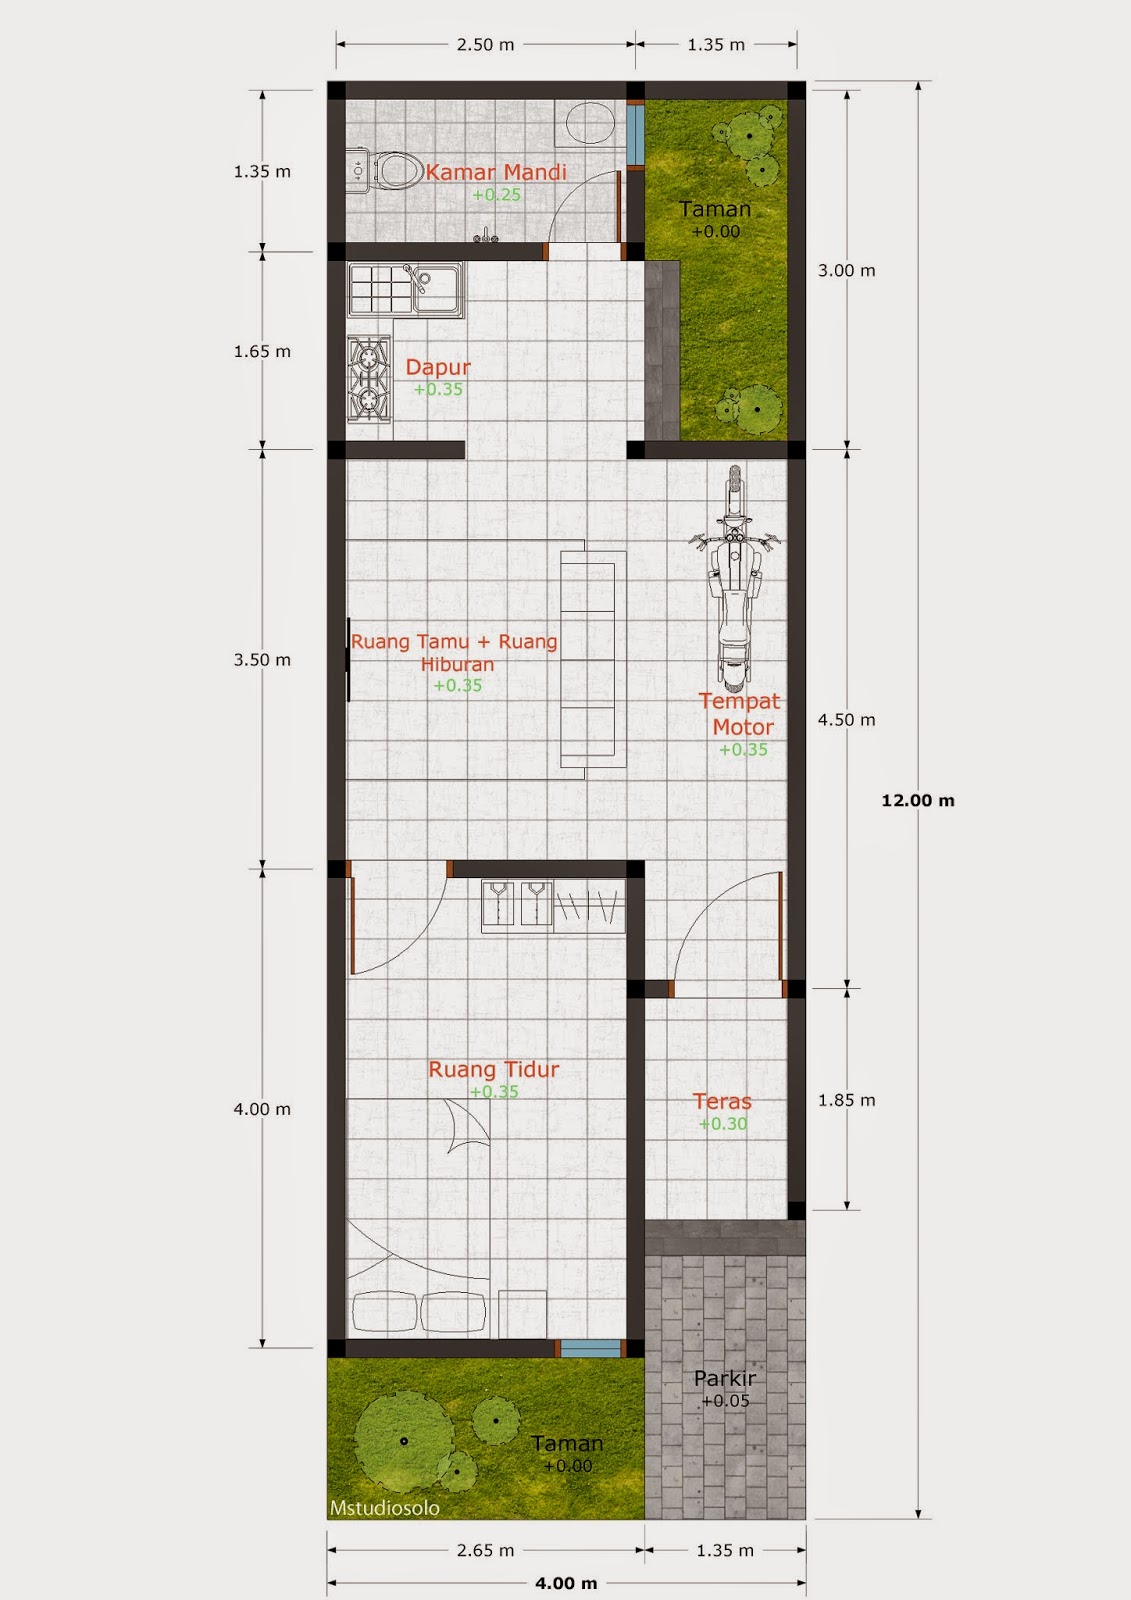 Gambar Desain Rumah Minimalis 2 Lantai Ukuran 4 X 12 Terbaru